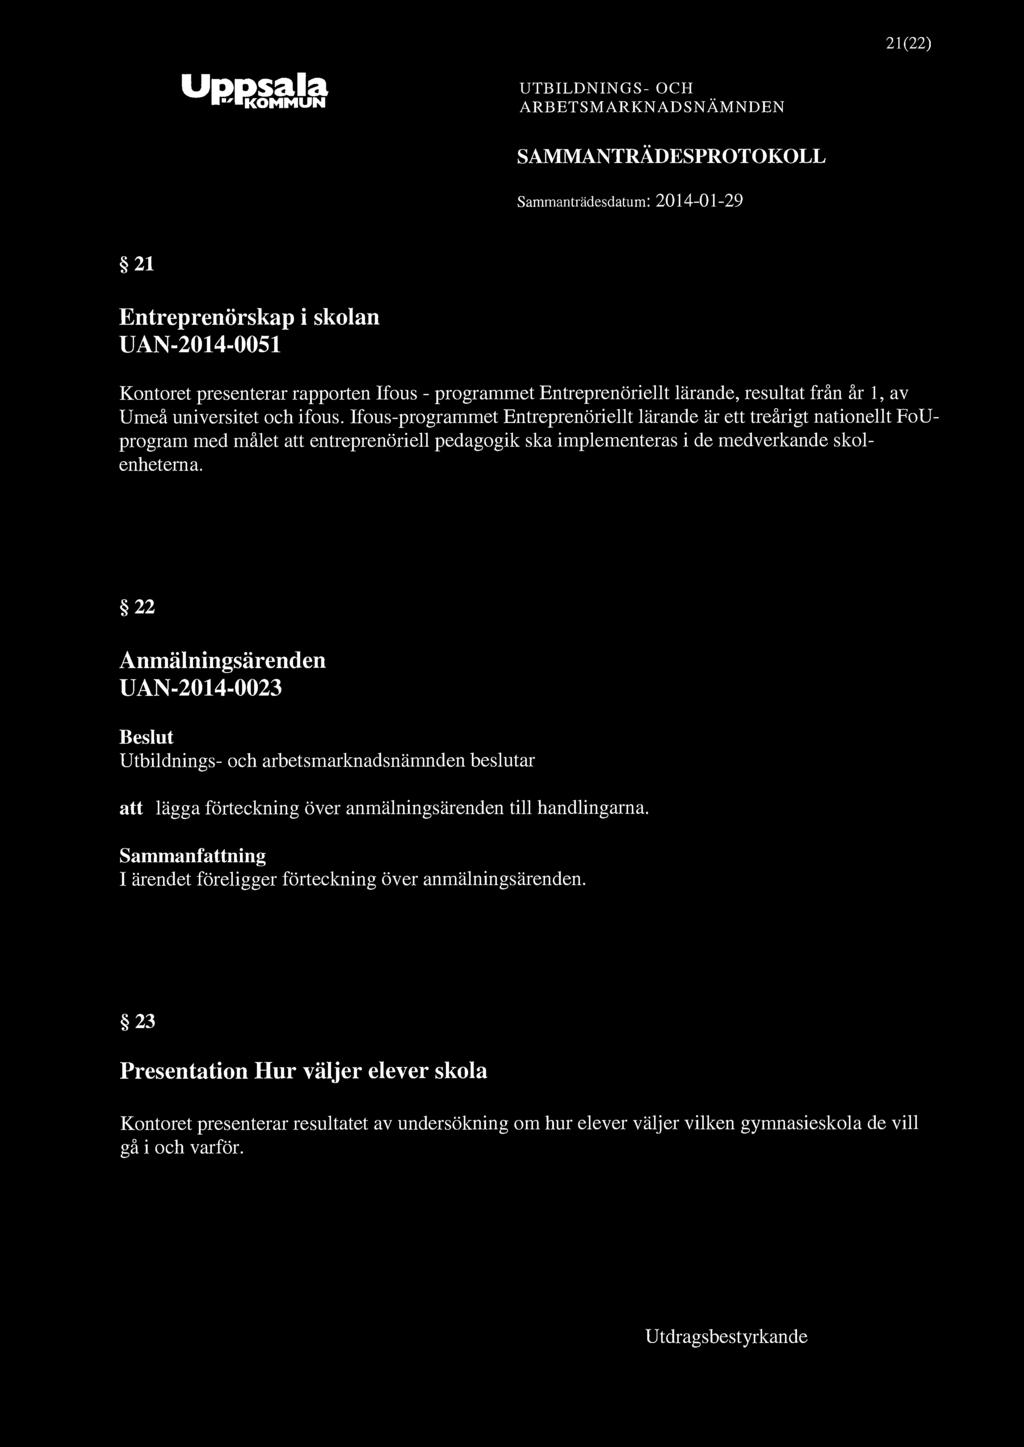 21(22) "KOMMUN 21 Entreprenörskap i skolan UAN-2014-0051 Kontoret presenterar rapporten Ifous - programmet Entreprenöriellt lärande, resultat från år 1, av Umeå universitet och ifous.